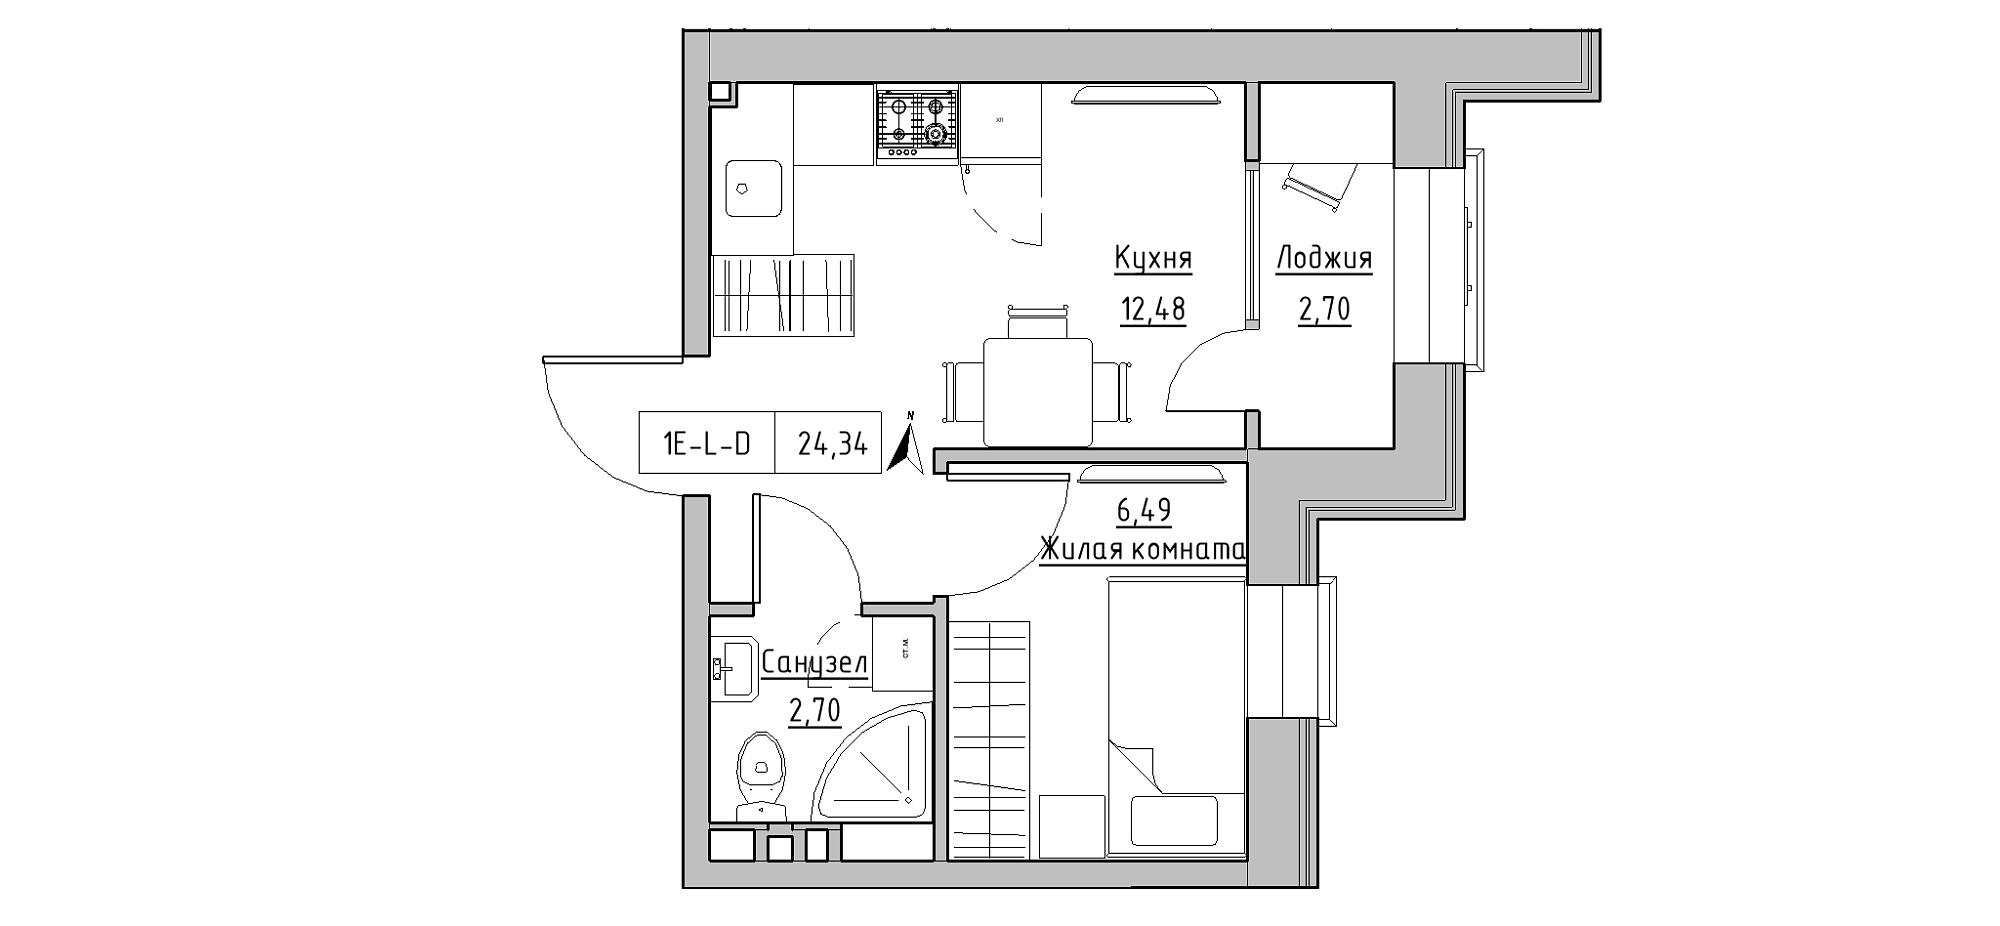 Планировка 1-к квартира площей 24.34м2, KS-020-05/0018.